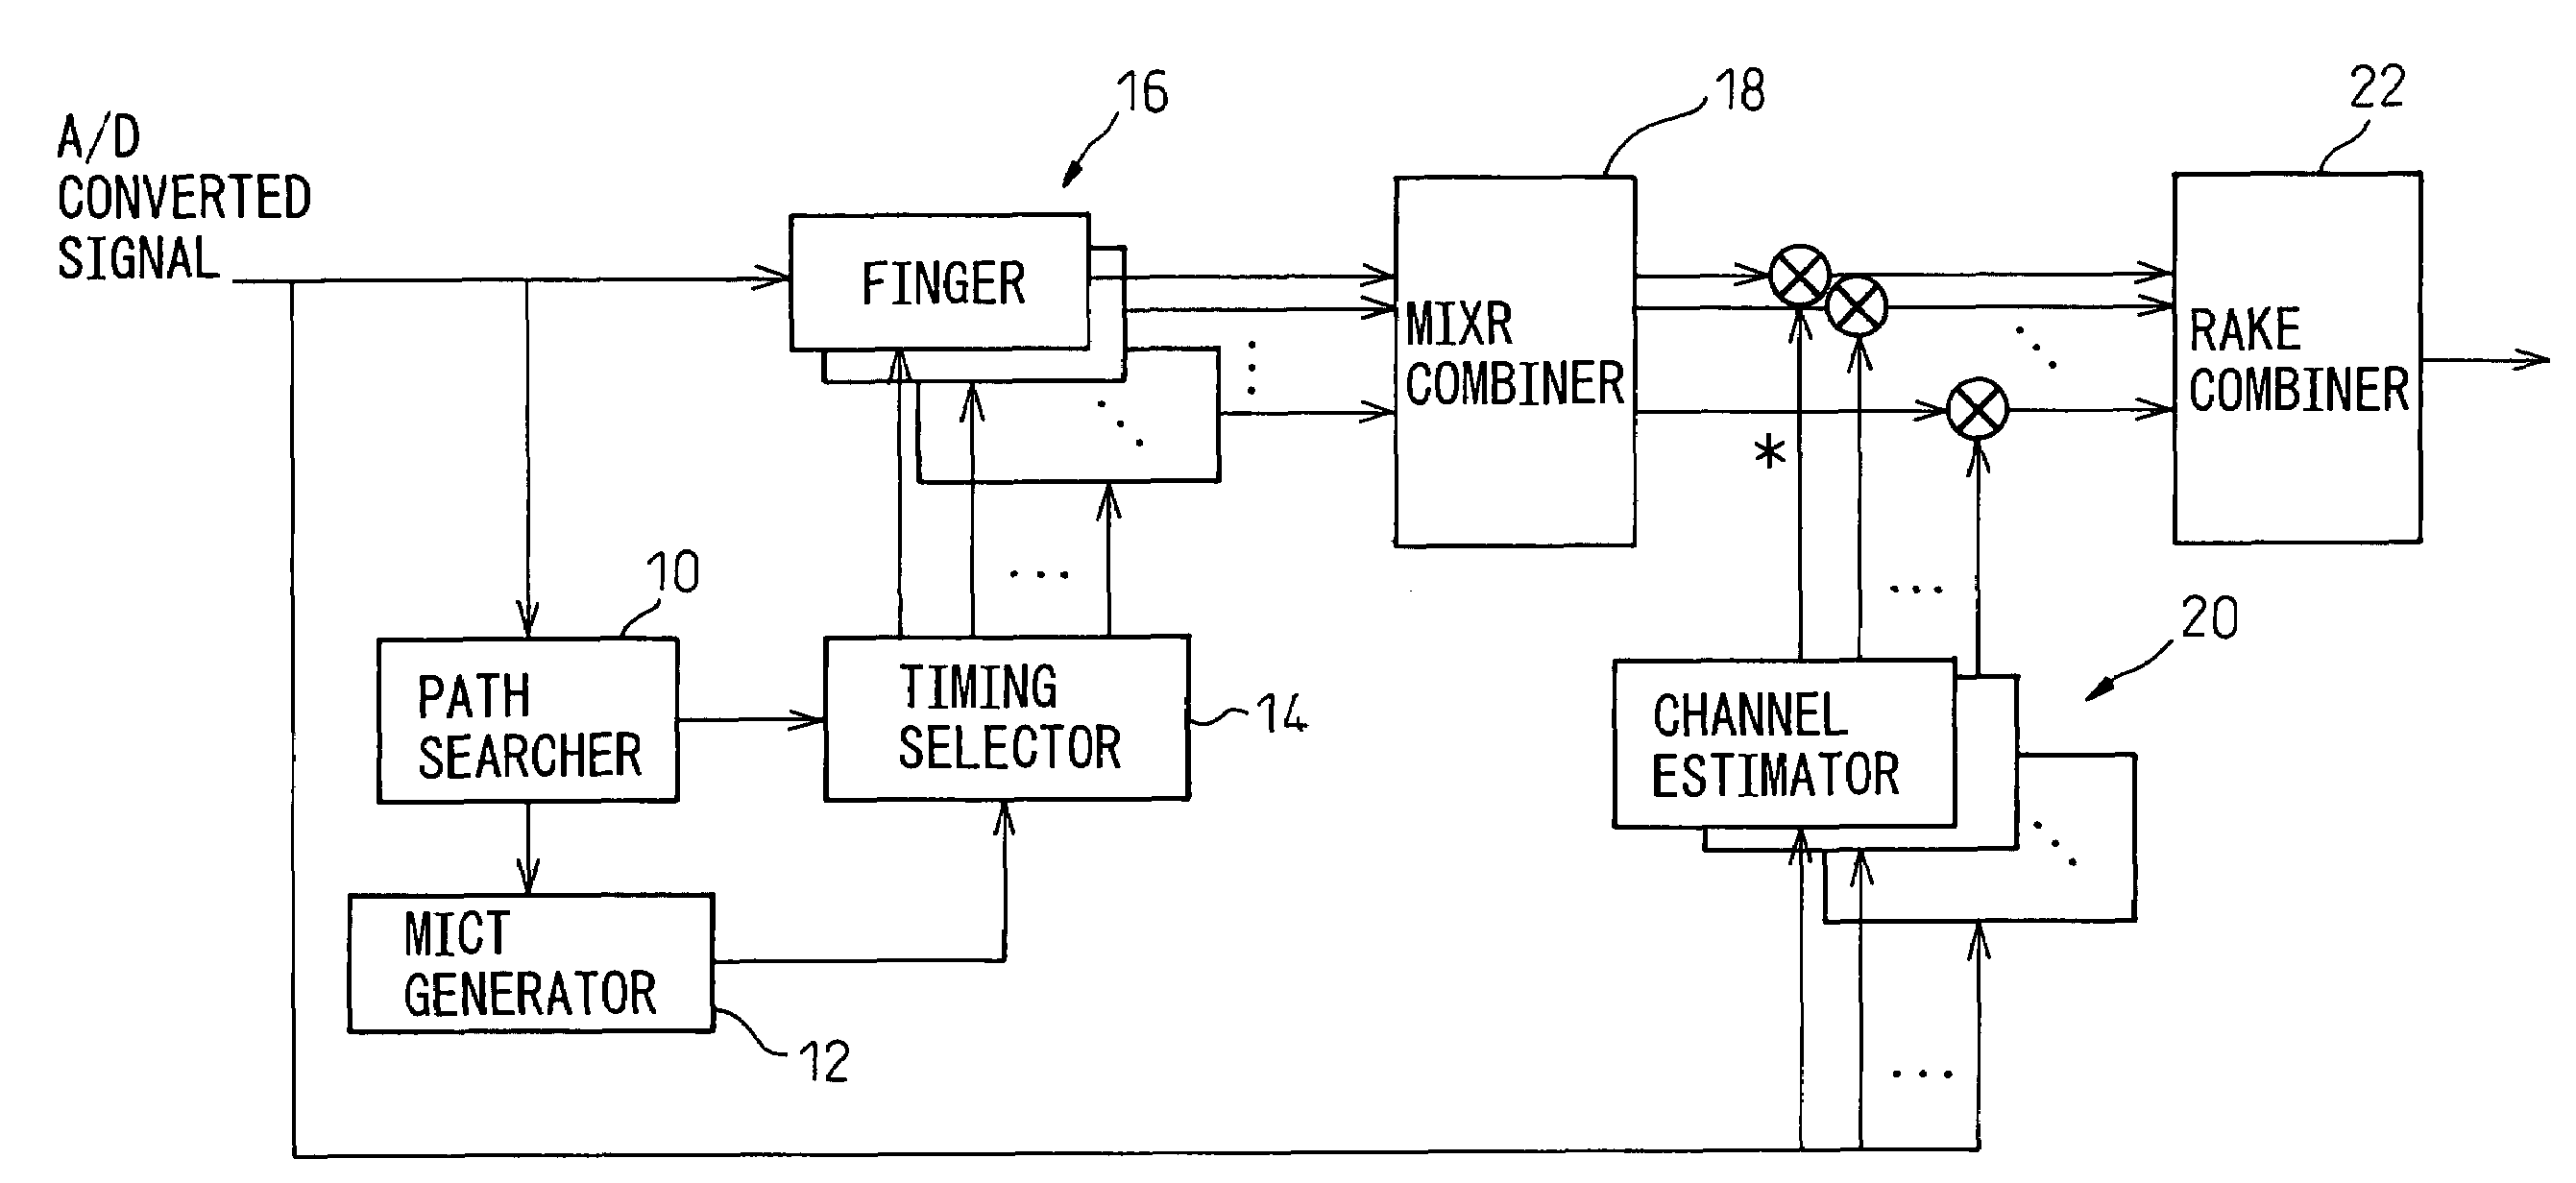 RAKE receiver having MIXR function